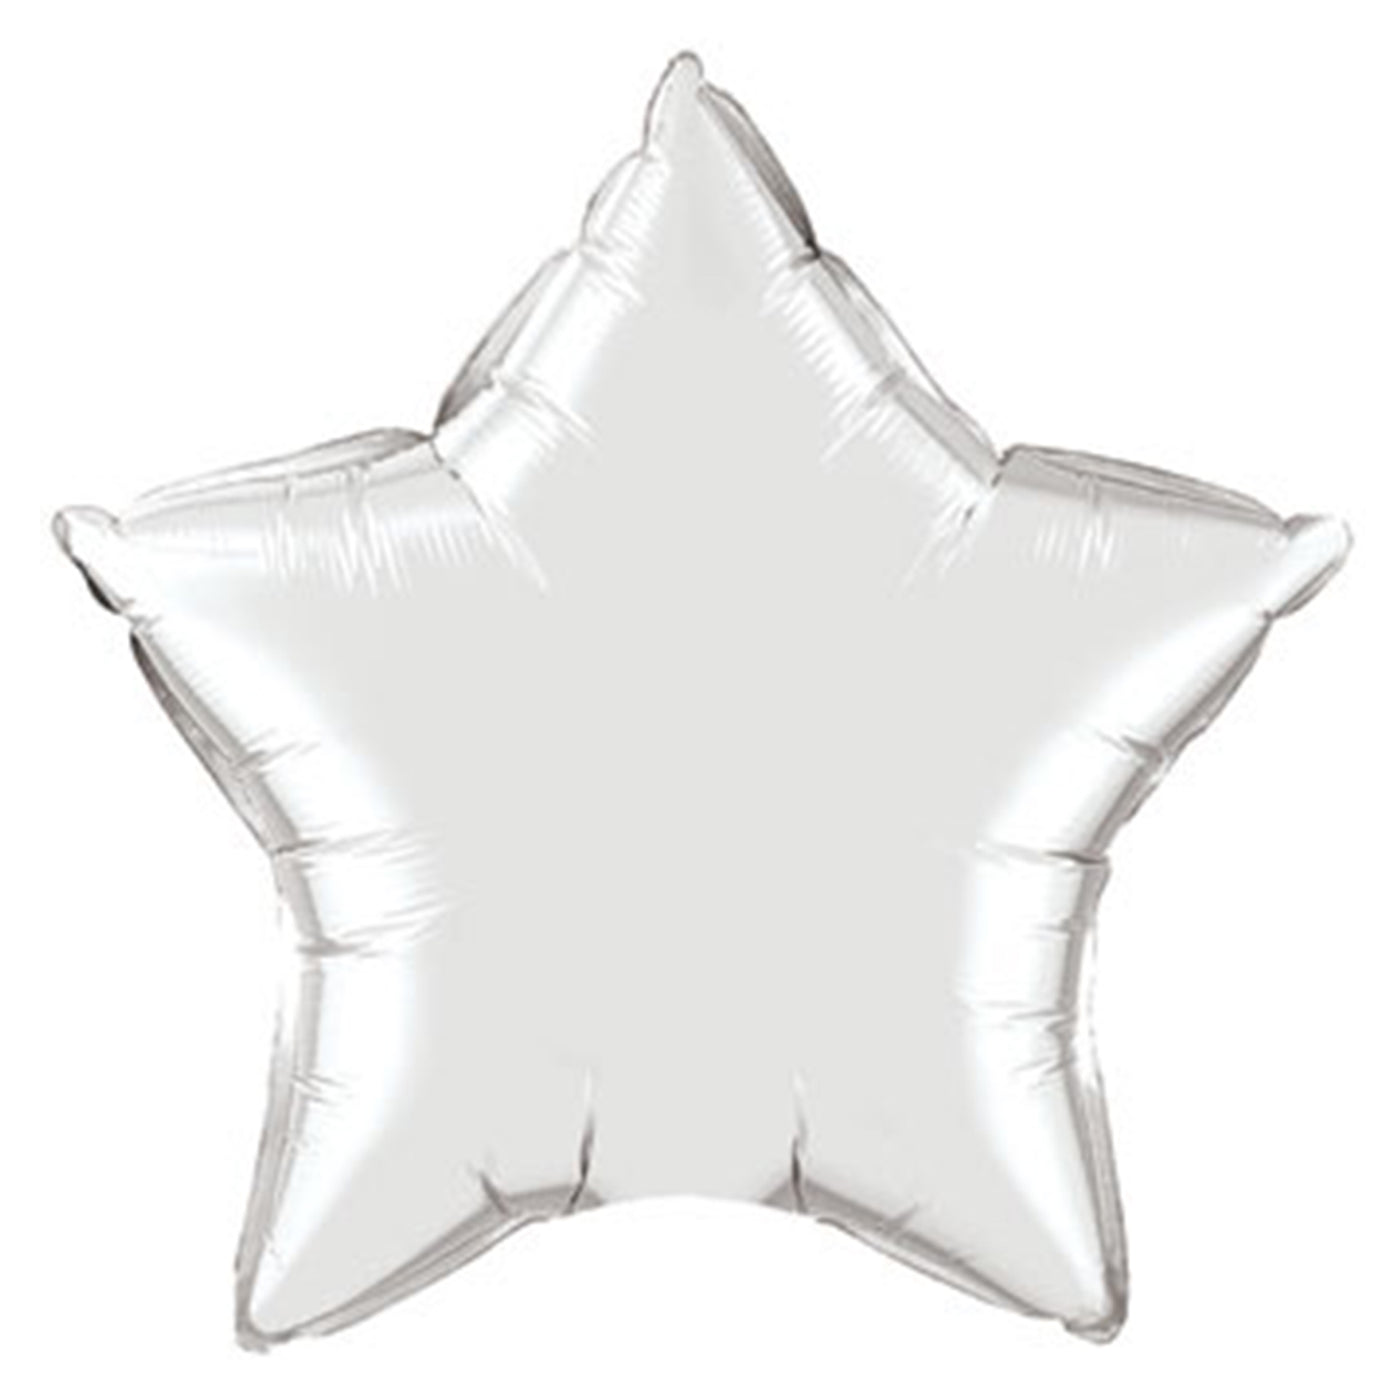 Silver Star Balloon